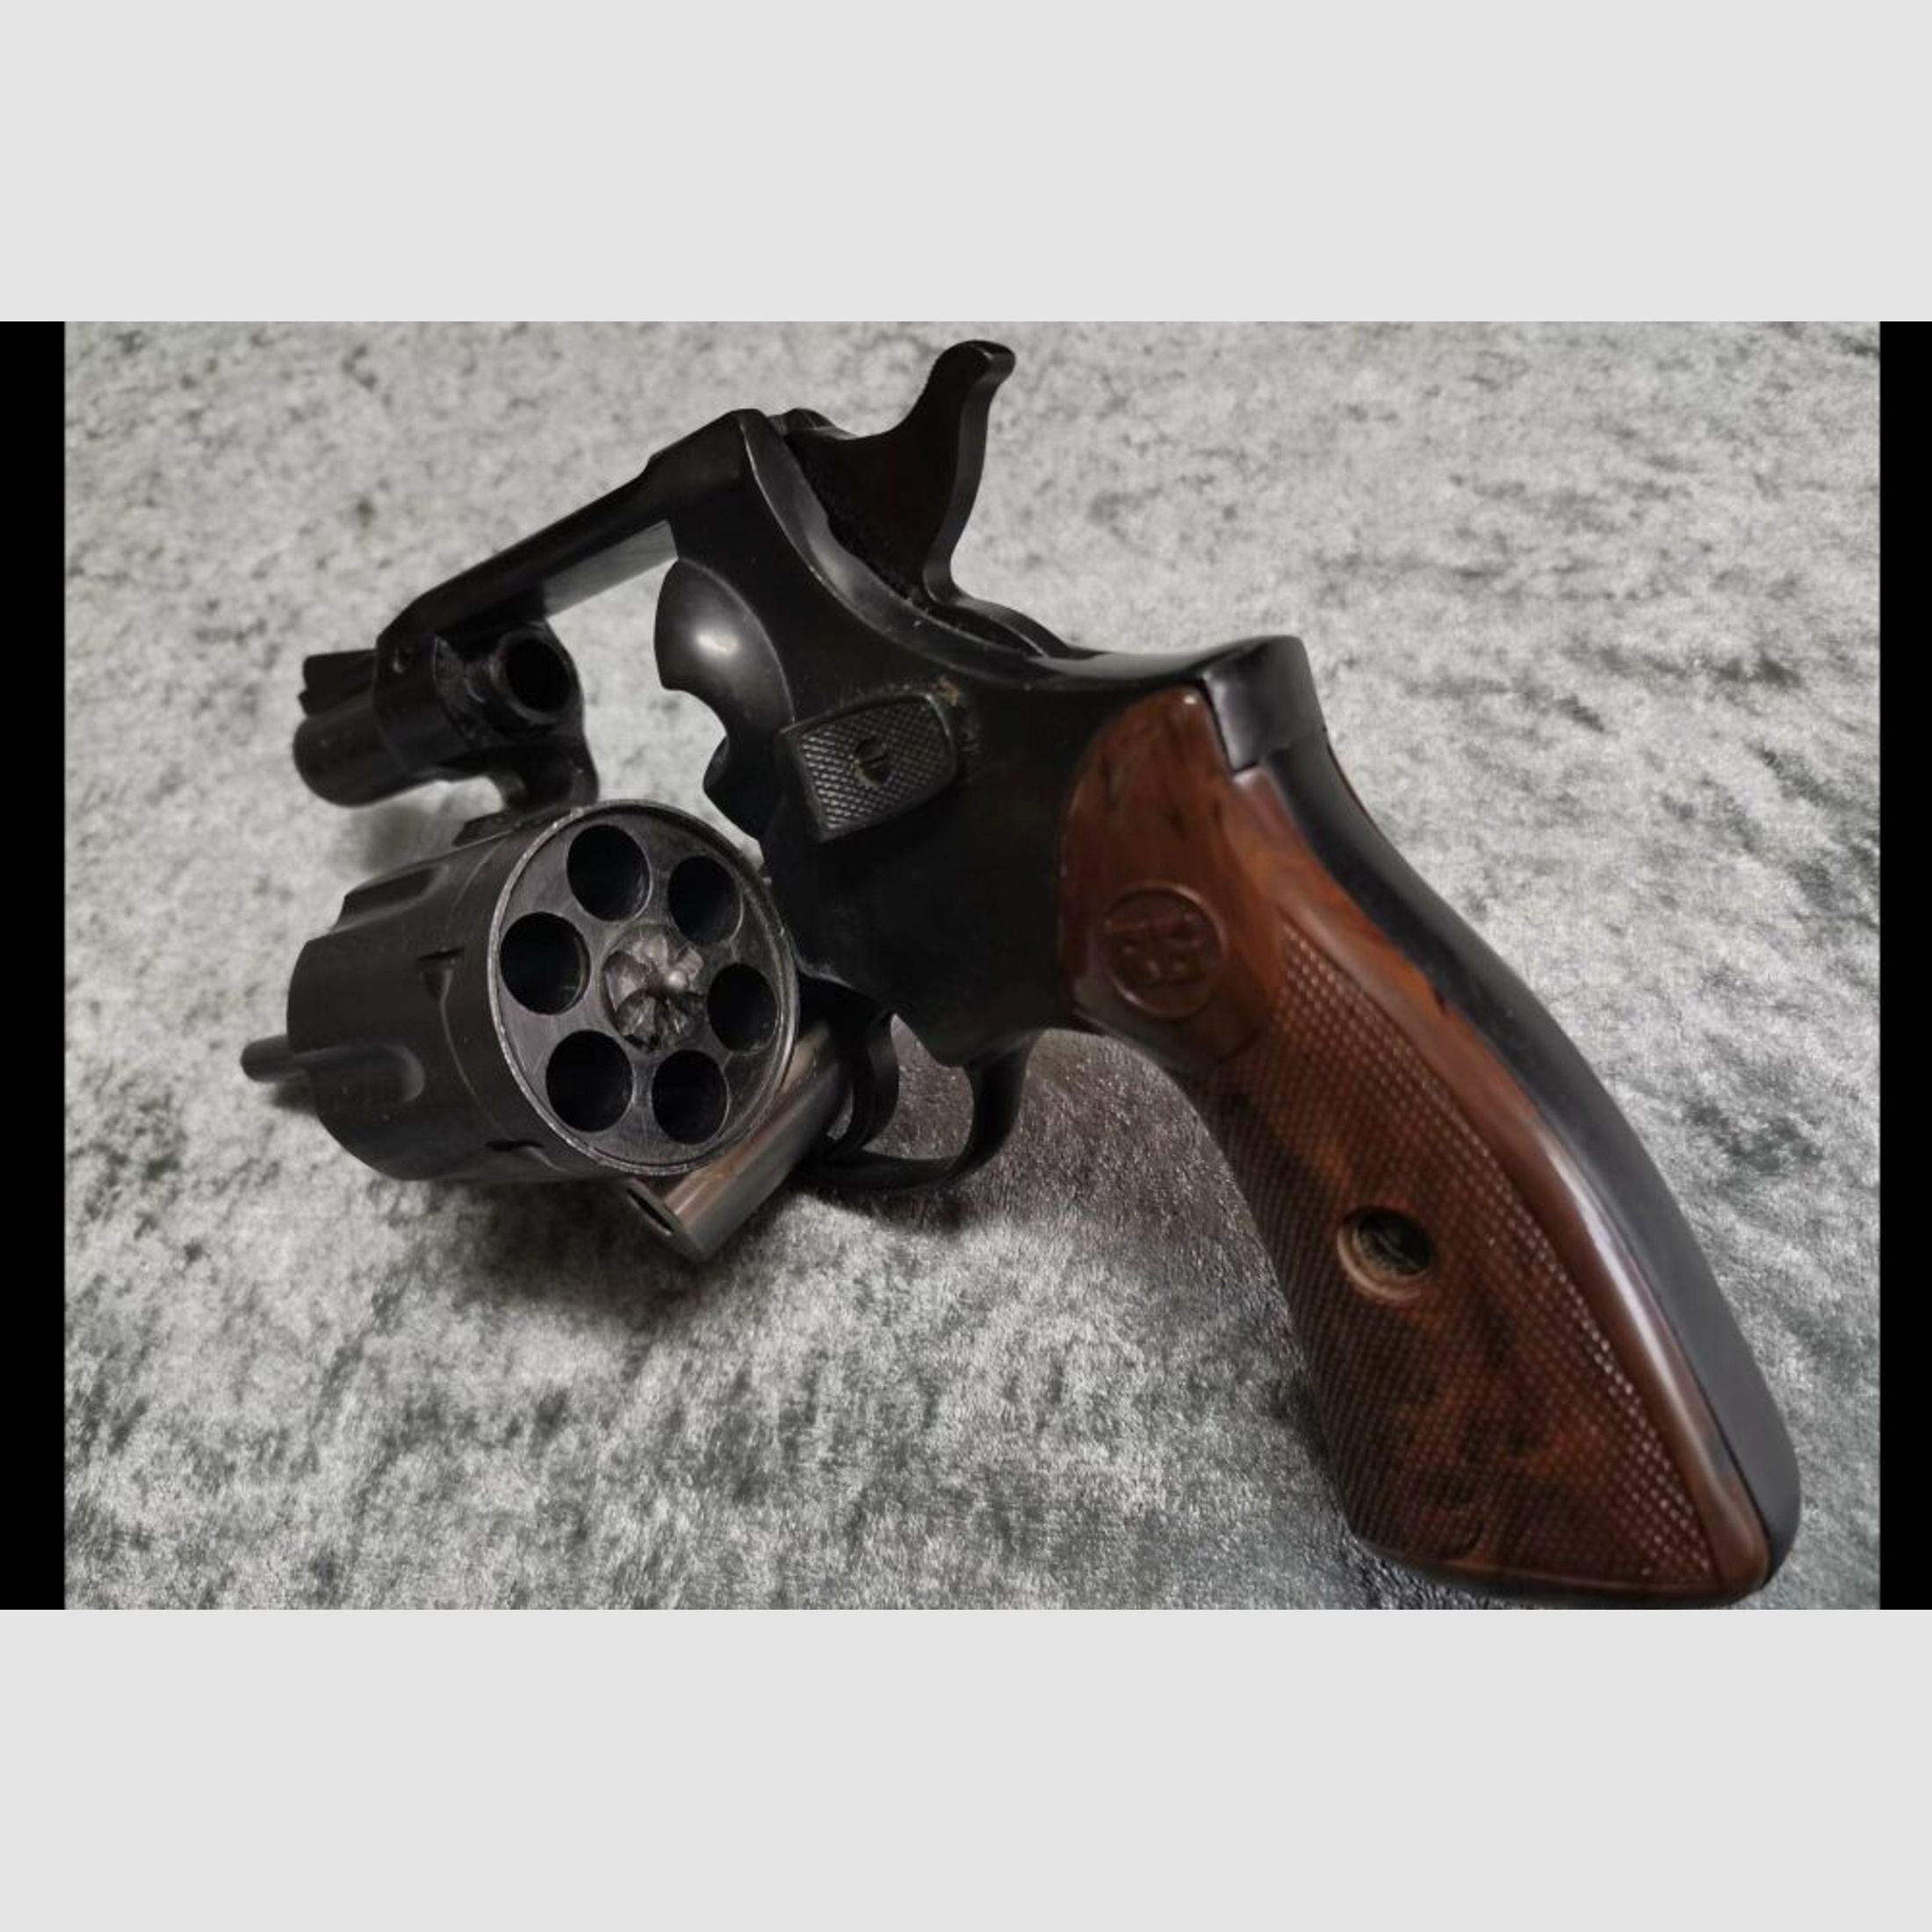 Röhm RG Modell 38	 .38Special Revolver